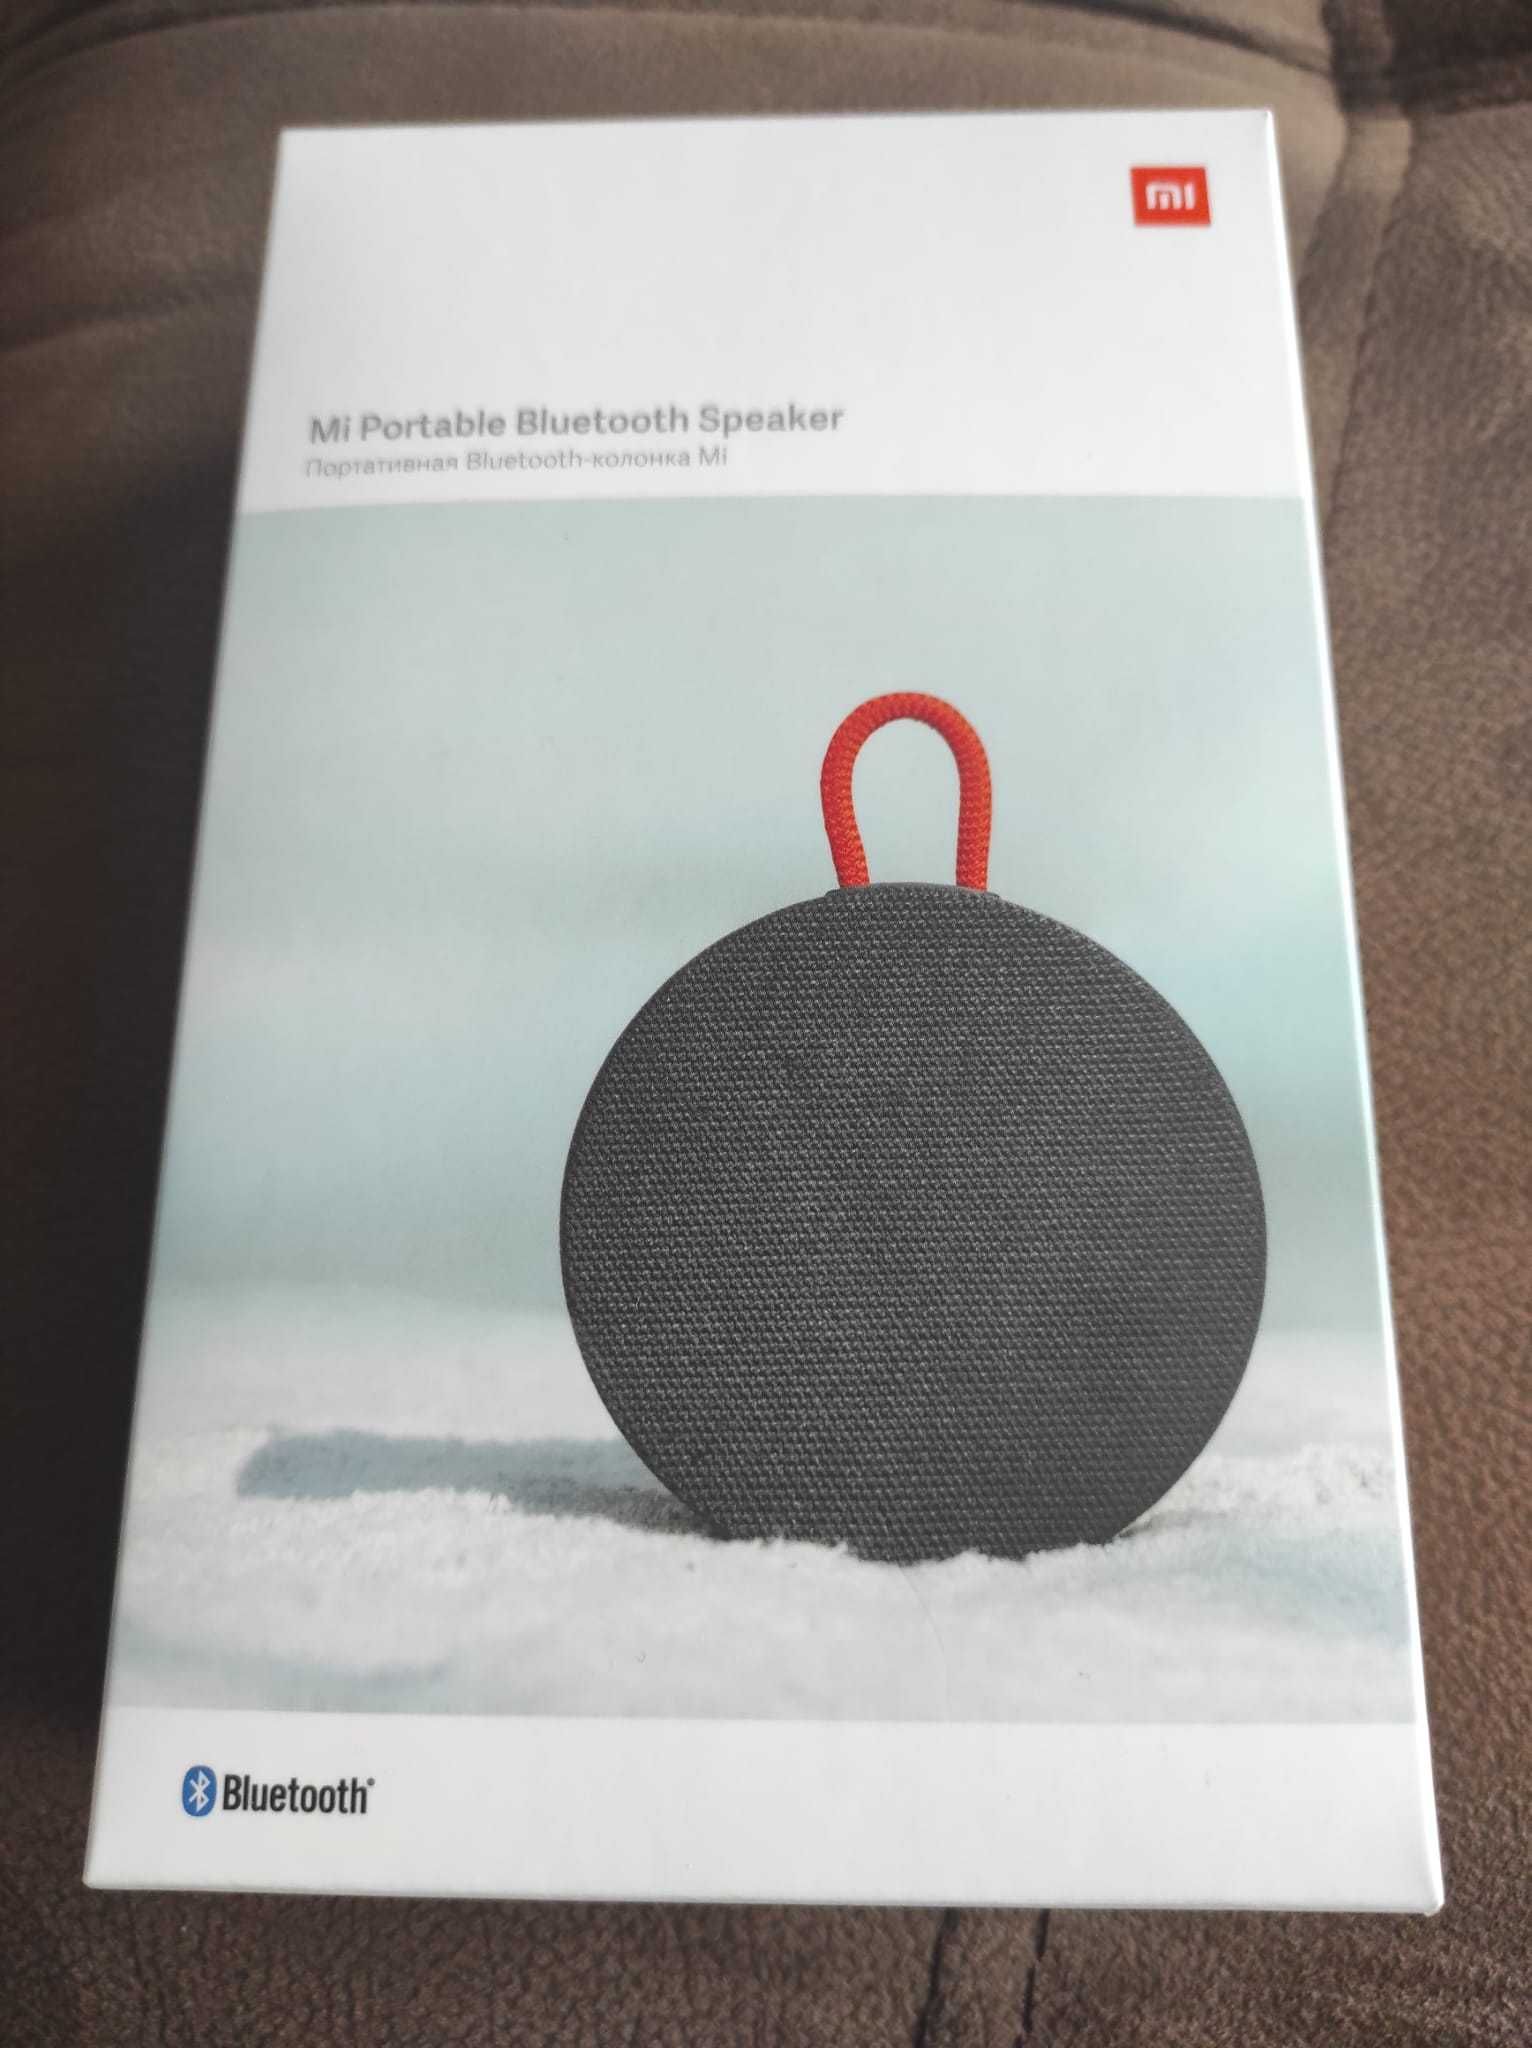 MI Portable Bluetooth Speaker XIAOMI, novo com caixa